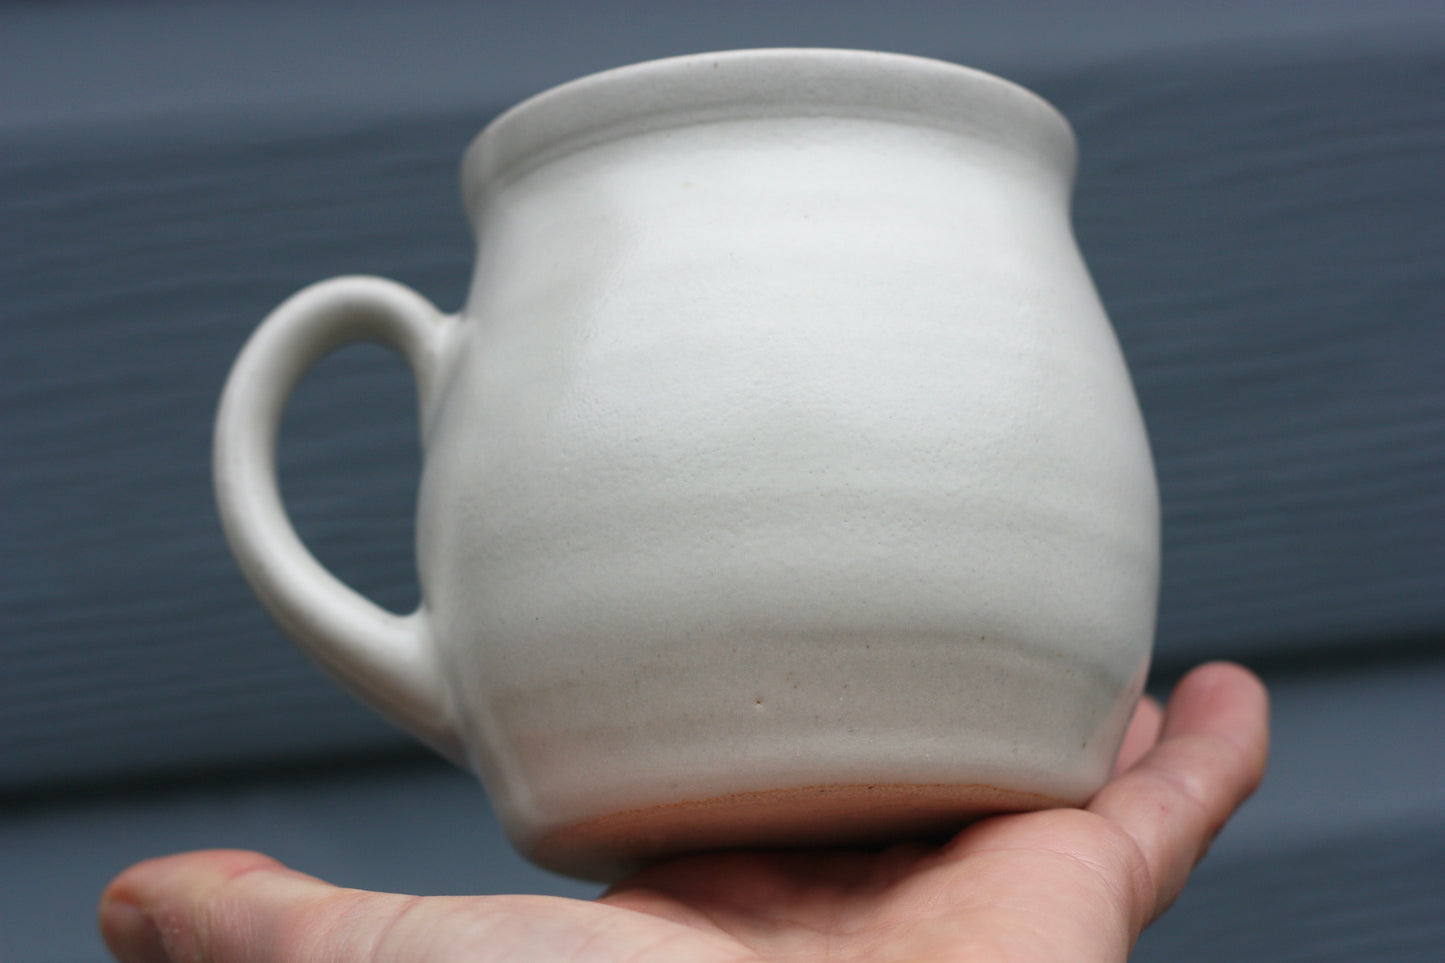 Clotted Cream glazed Mug 14oz 400ml Large Mug in creamy white glaze